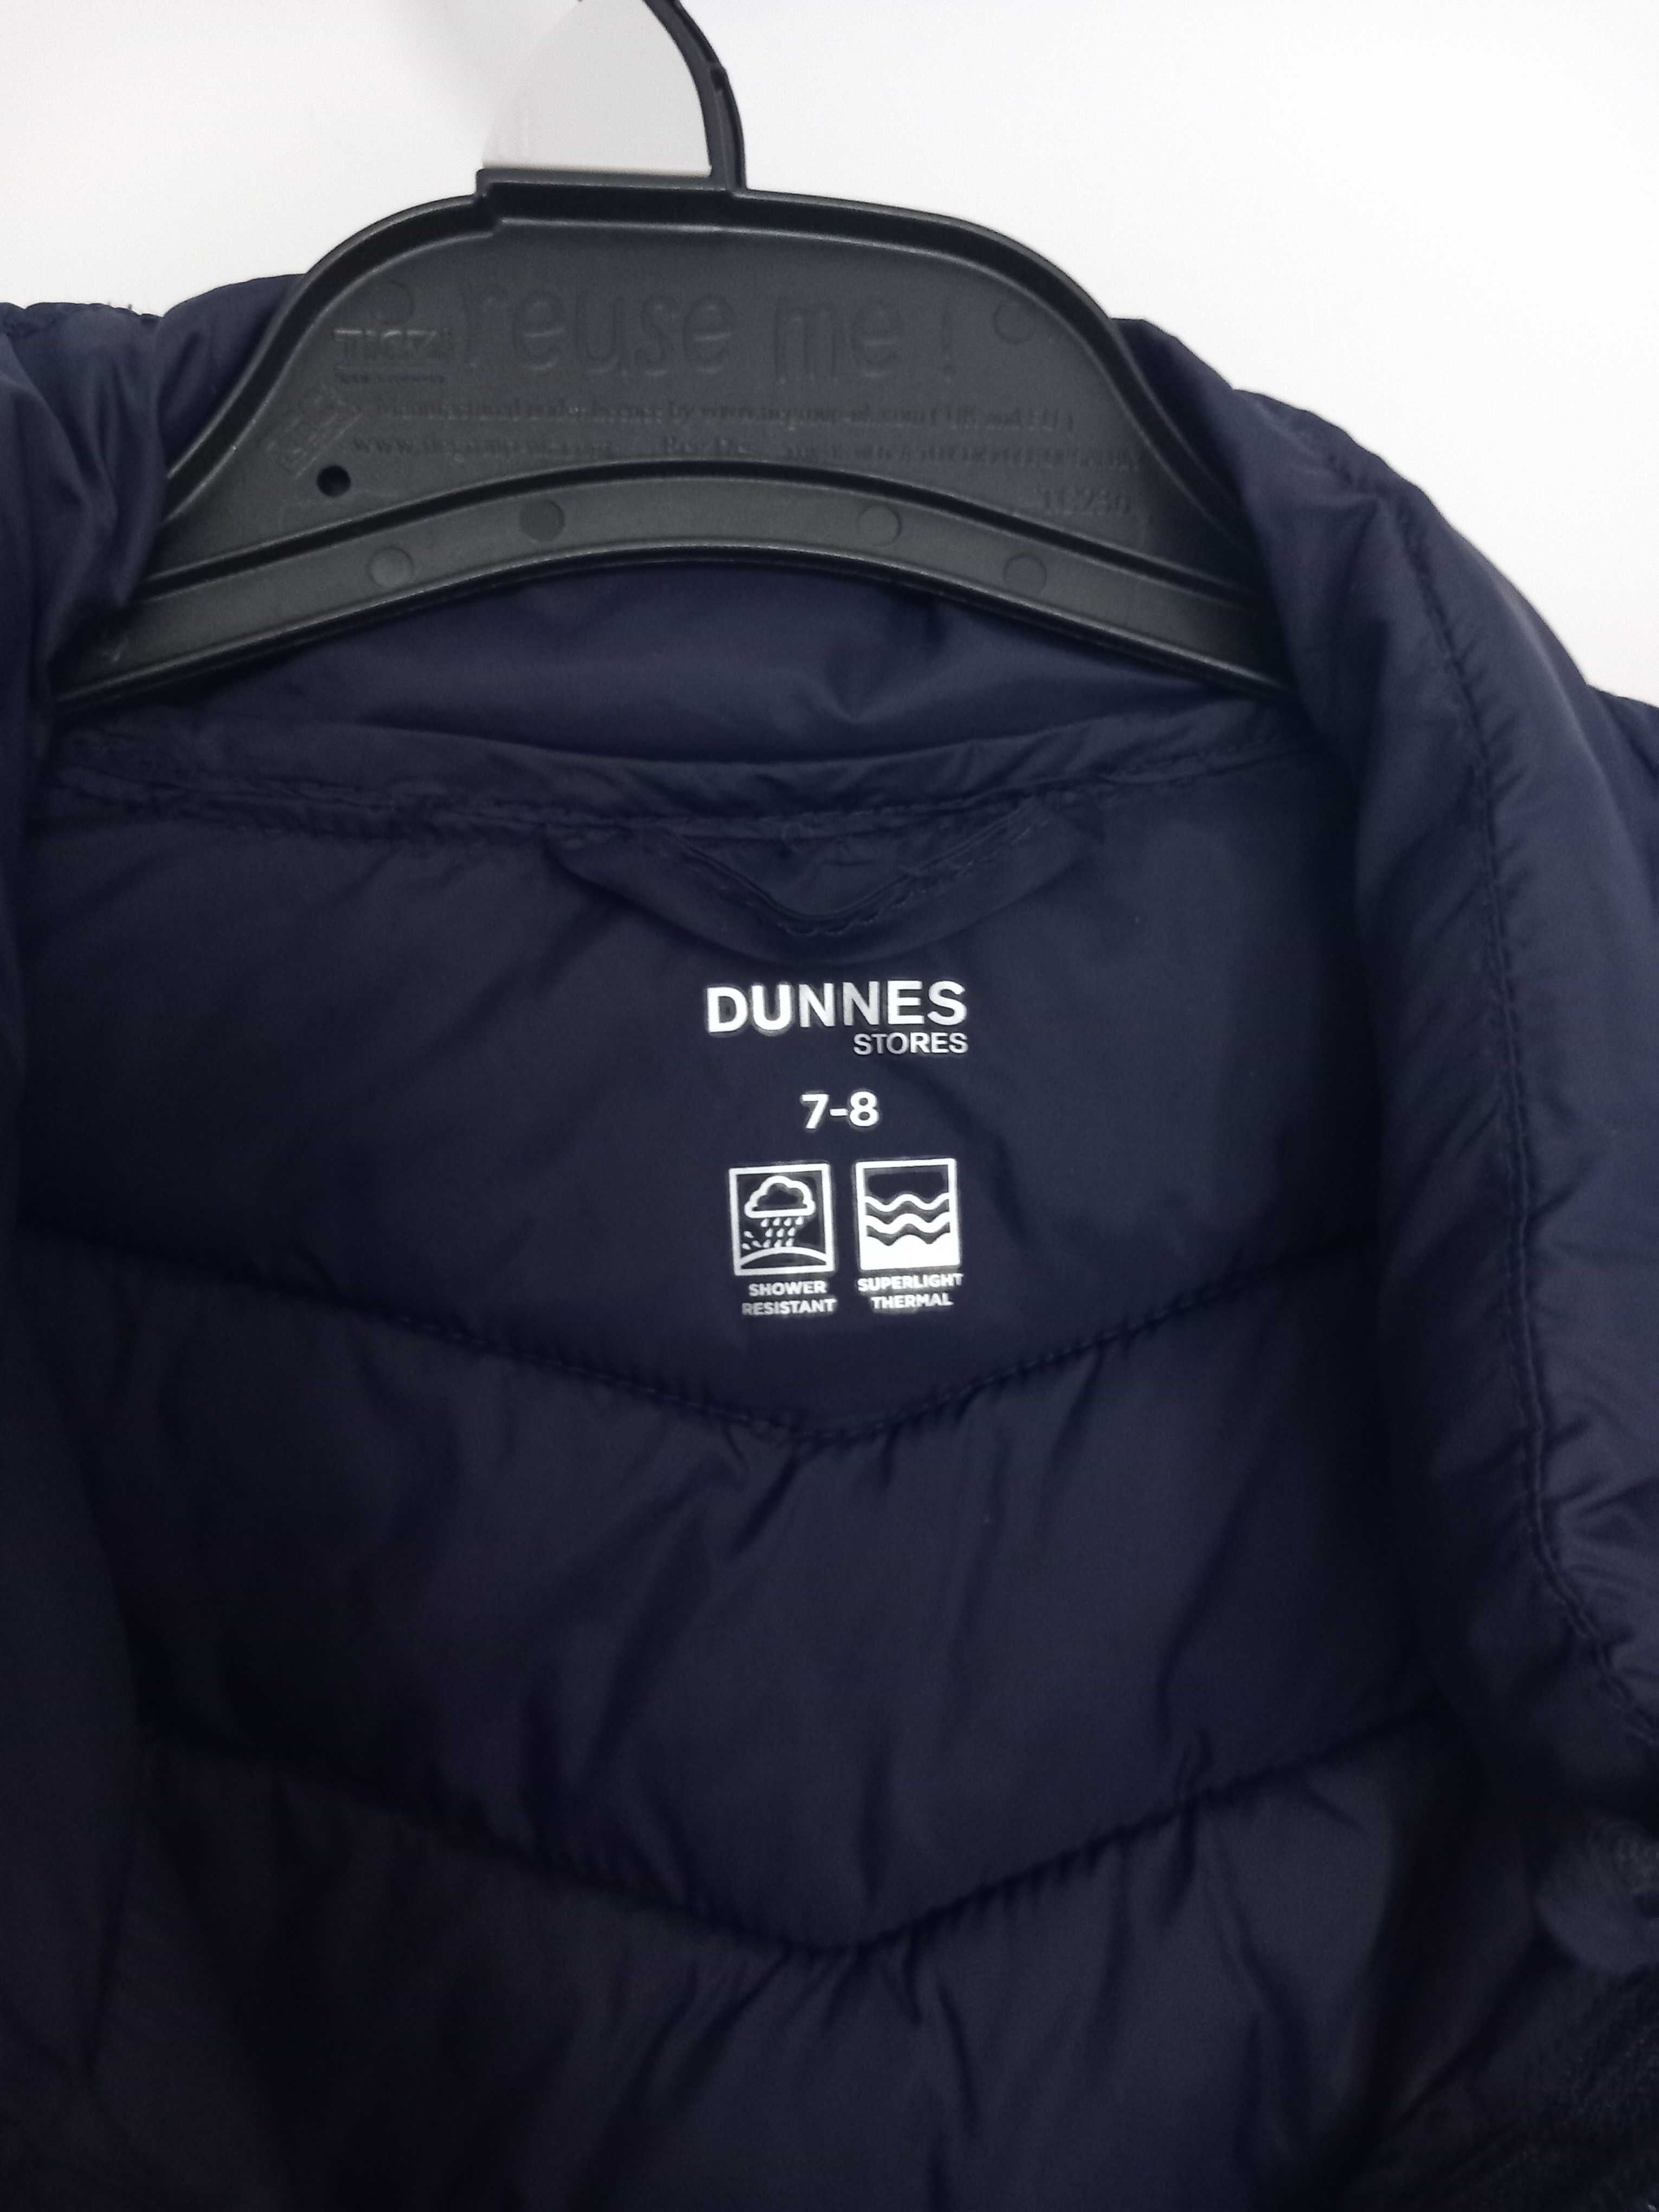 Dunnes kurtka przejściowa dla chłopca grantowa 7-8 lat  122-128cm